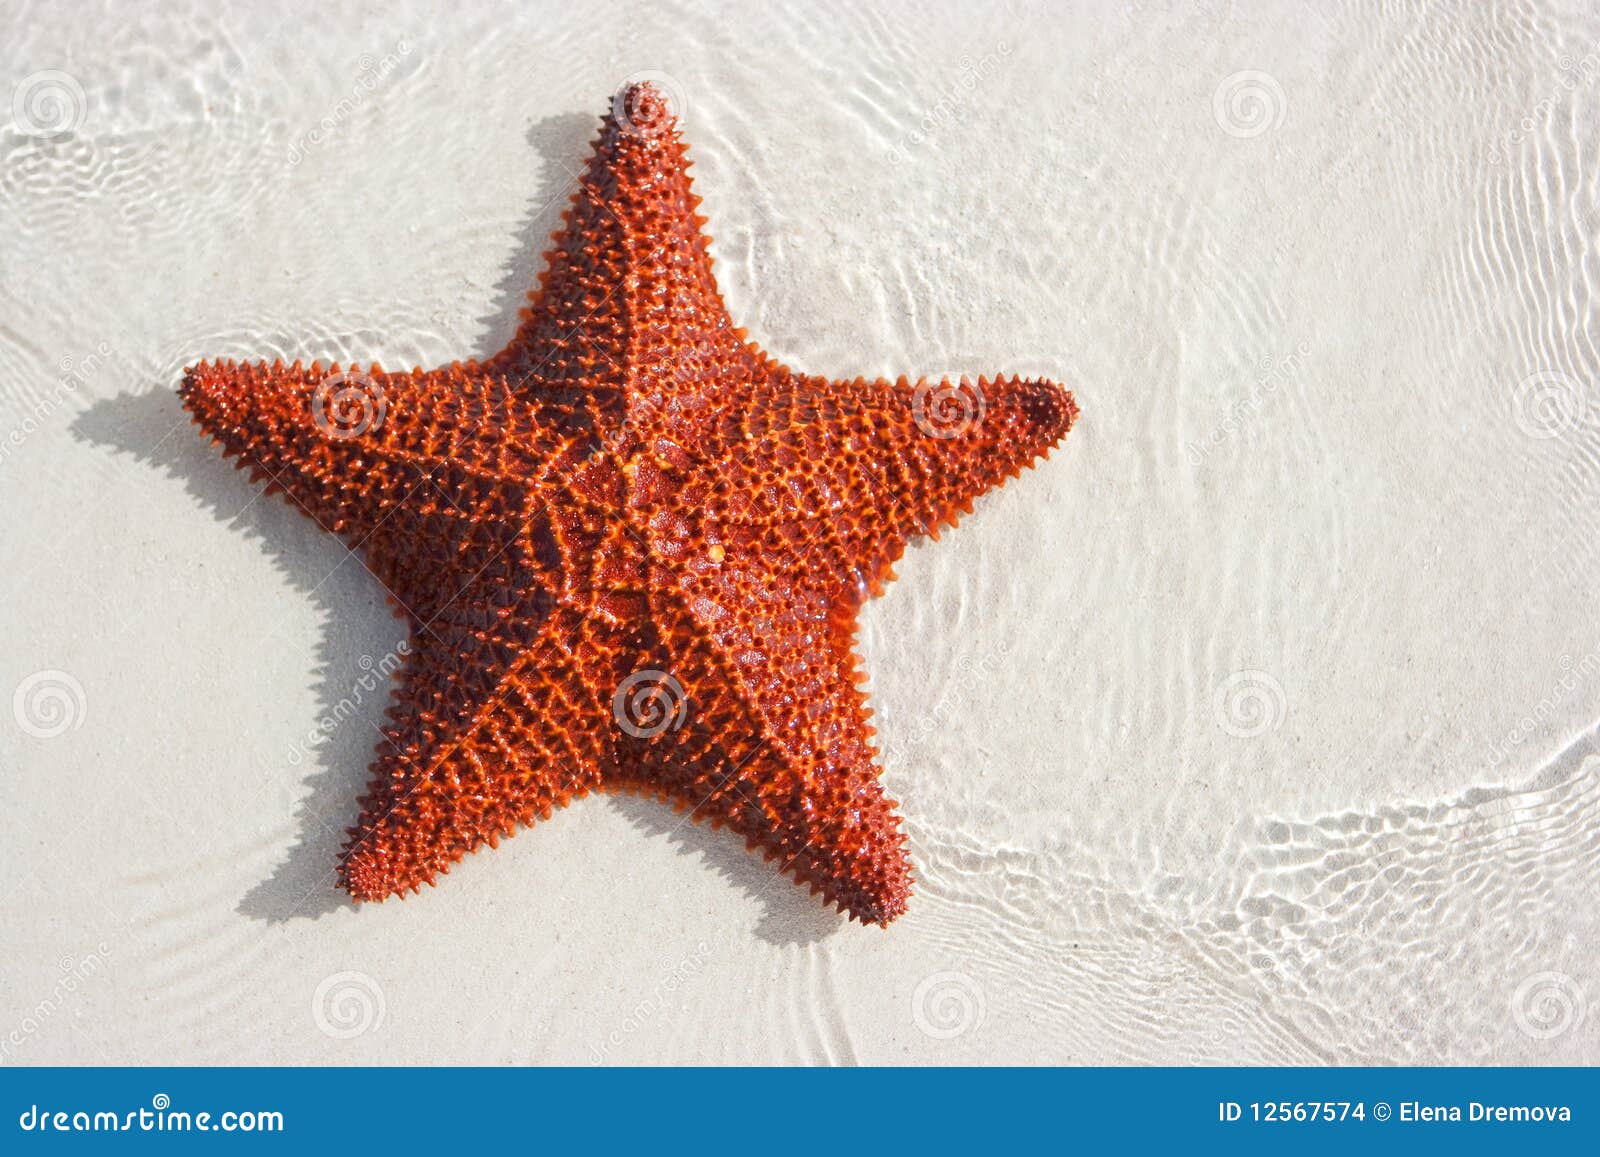 big red starfish